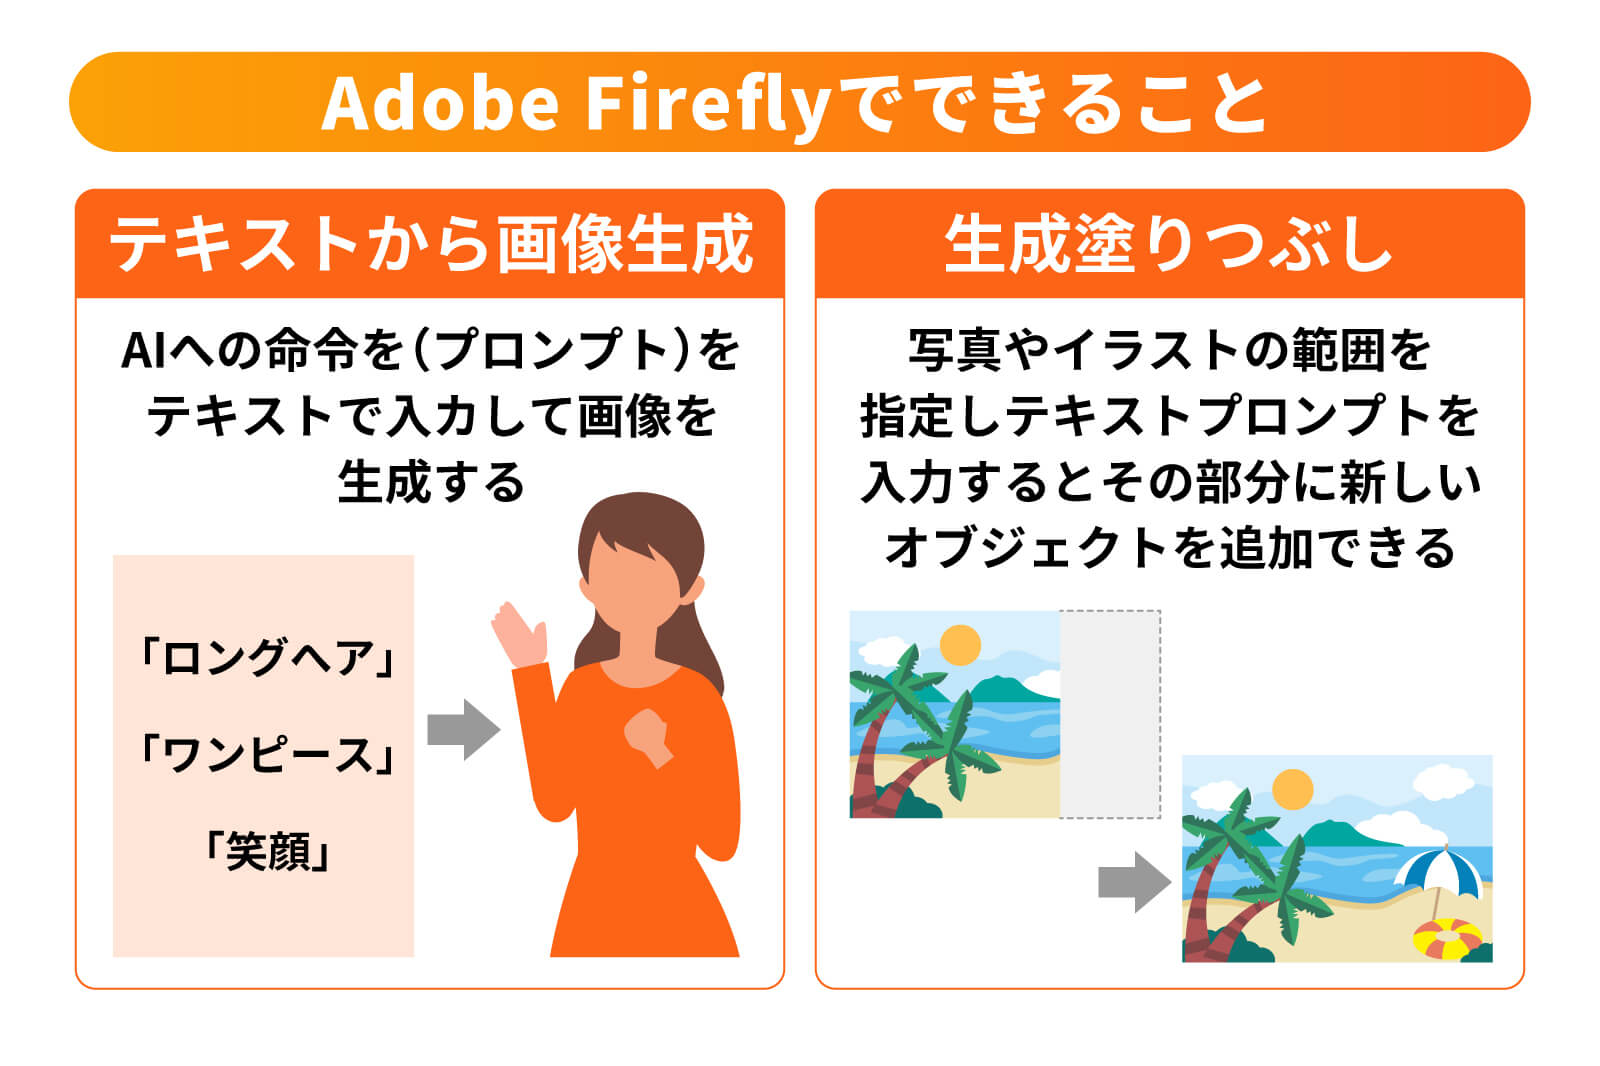 Adobe Fireflyでできること